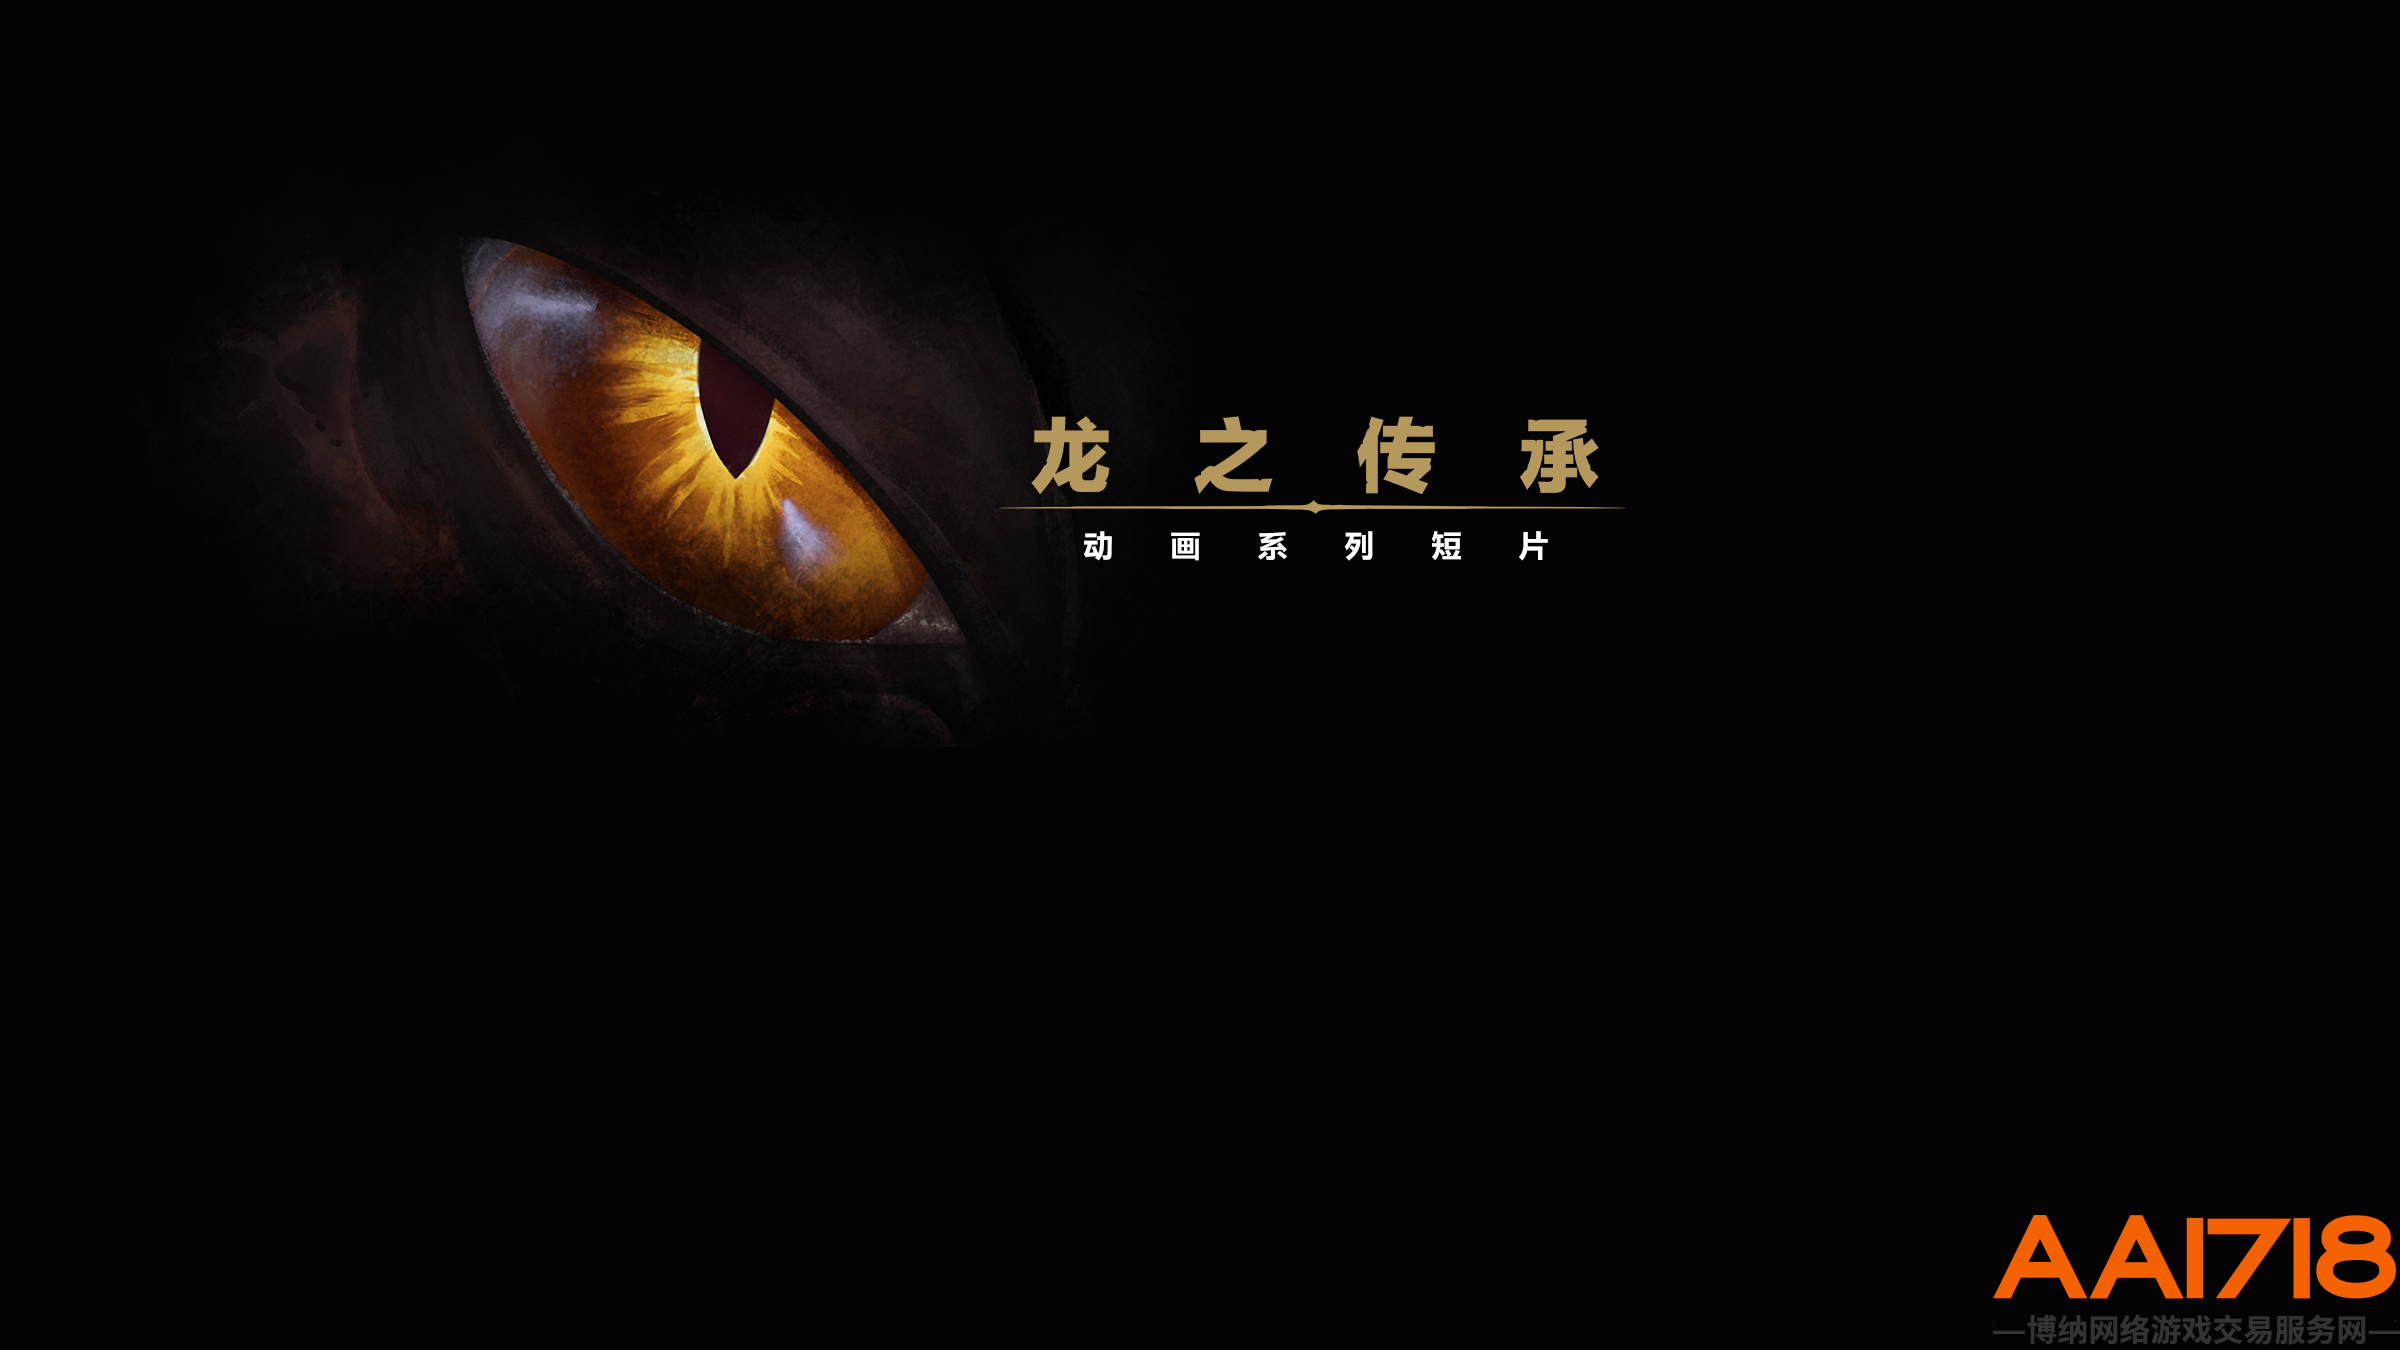 魔兽世界 “巨龙时代”动画系列短片“龙之传承”10月26日首播